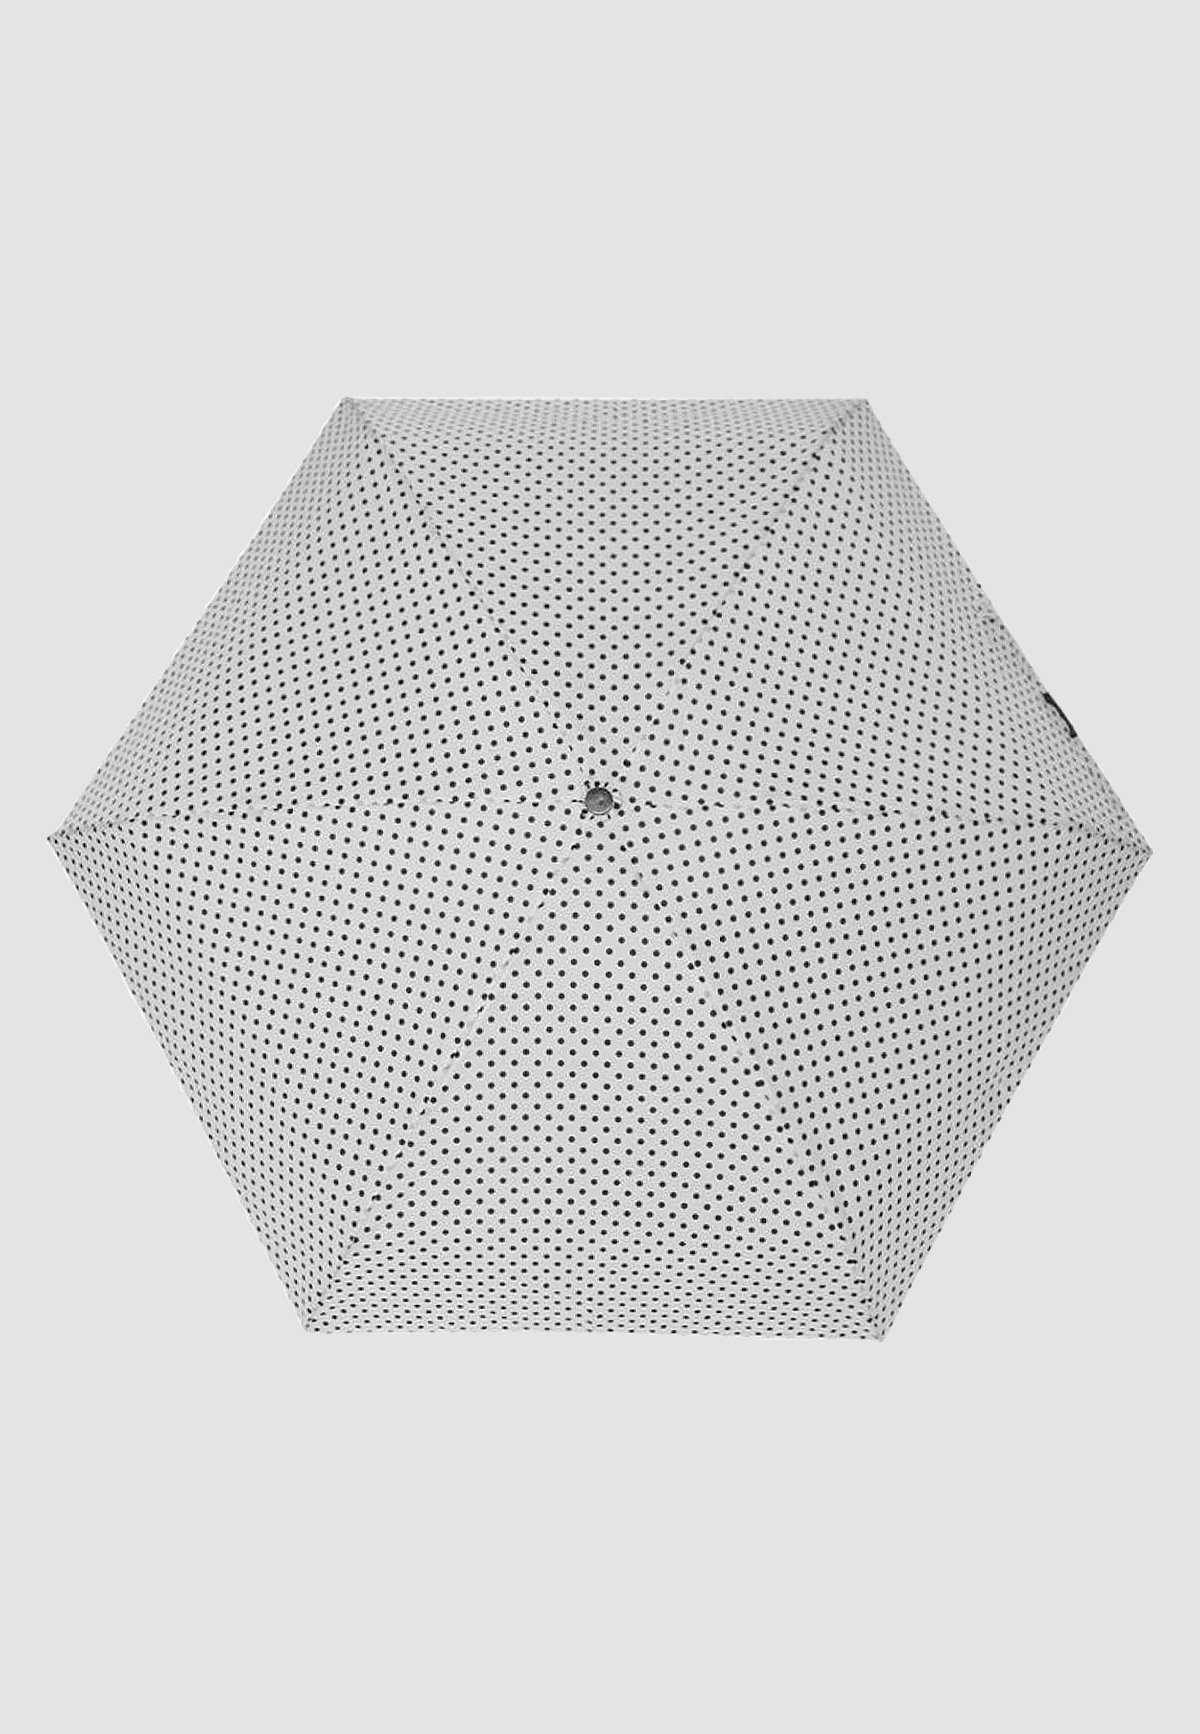 ANELY Taschenregenschirm in Mini Weiß Taschen Kleiner Gepunktet, Regenschirm Ausführung 4684